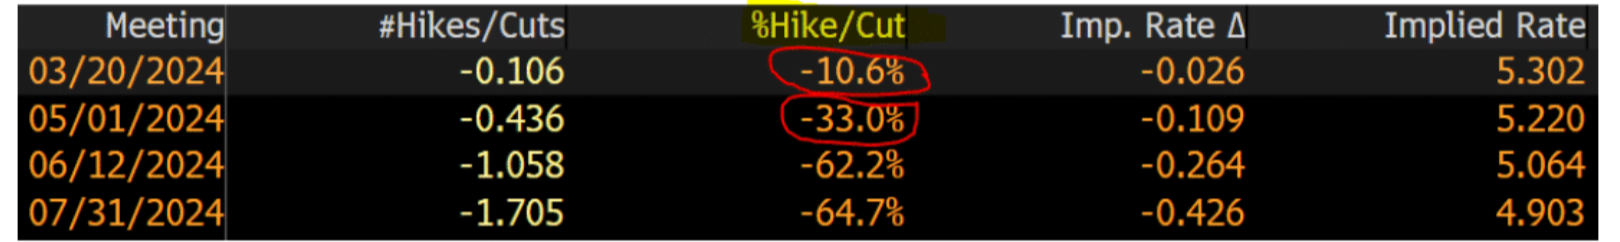 Bloomberg Terminal - Rate Cut Estimates